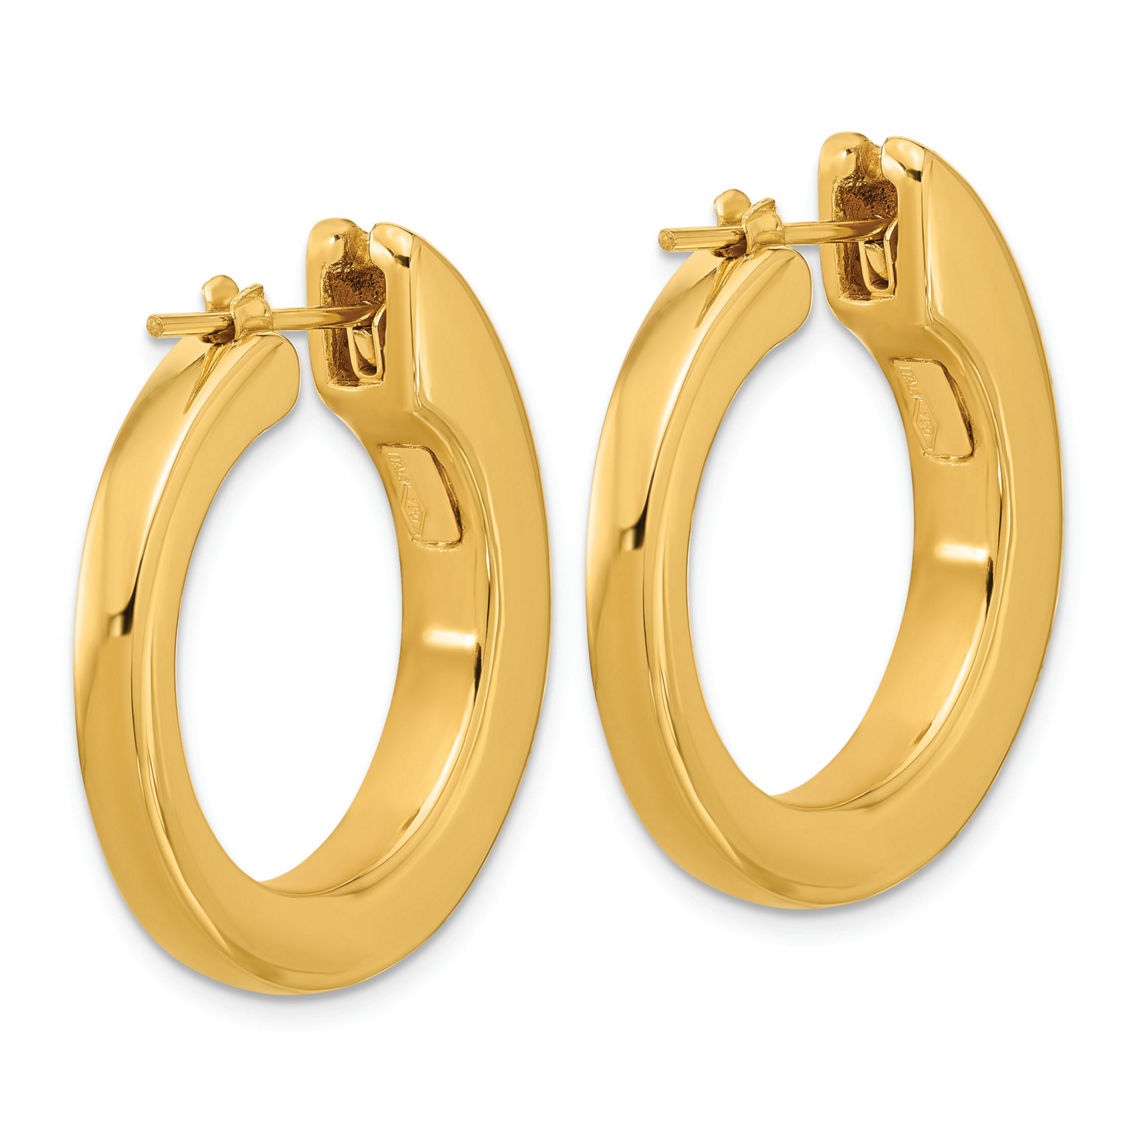 18K Gold Italian Elegance SEMI-SOLID HOOP EARRINGS - Image 2 of 5